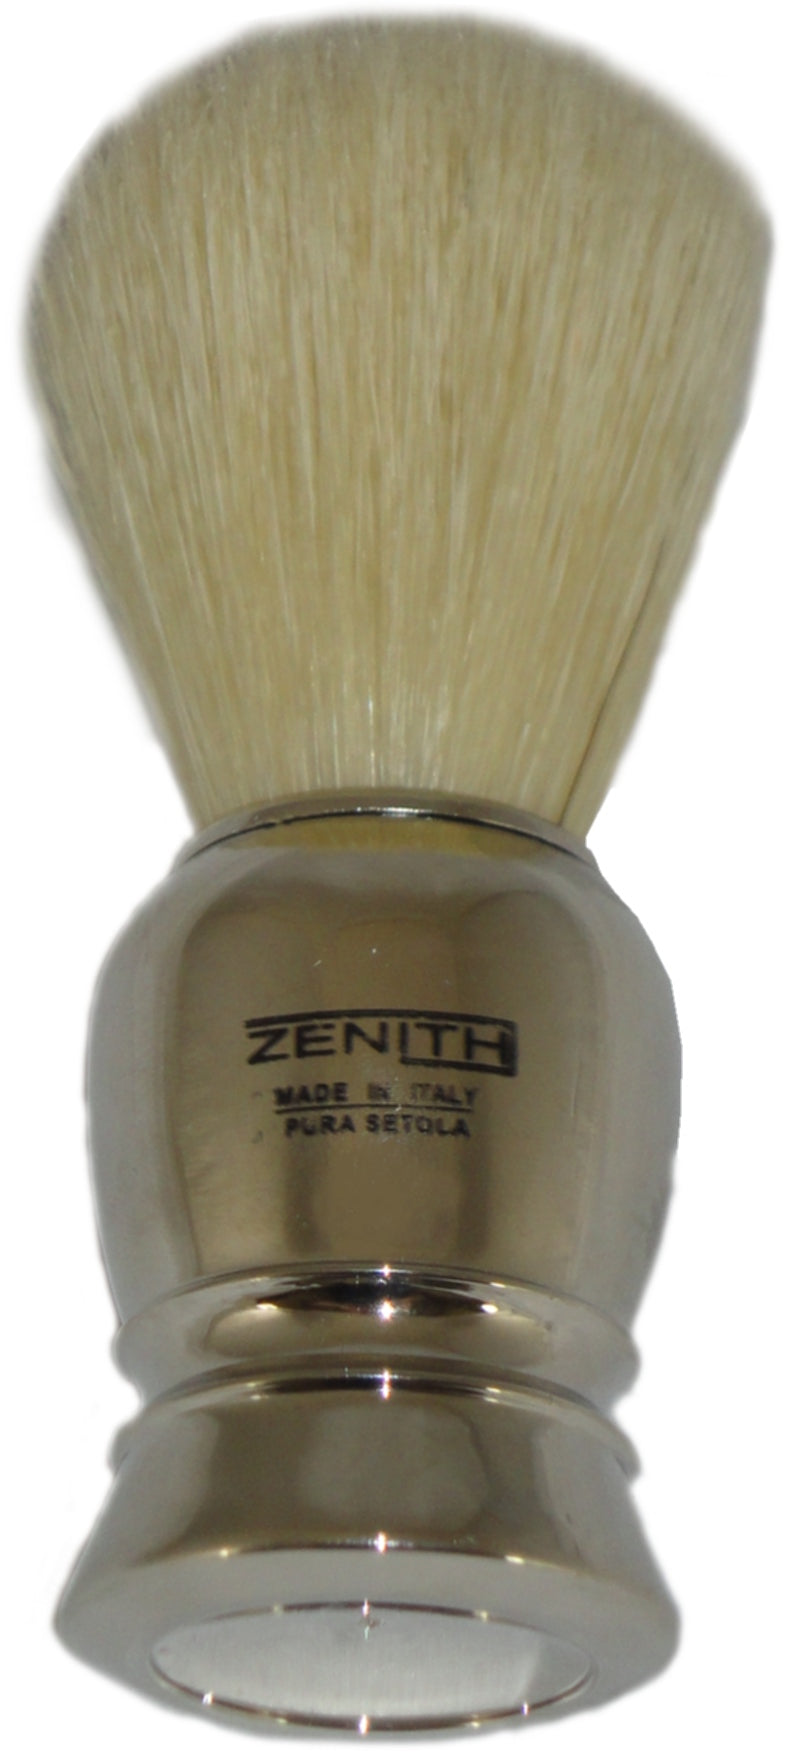 Zenith Shaving Brush, Chrome